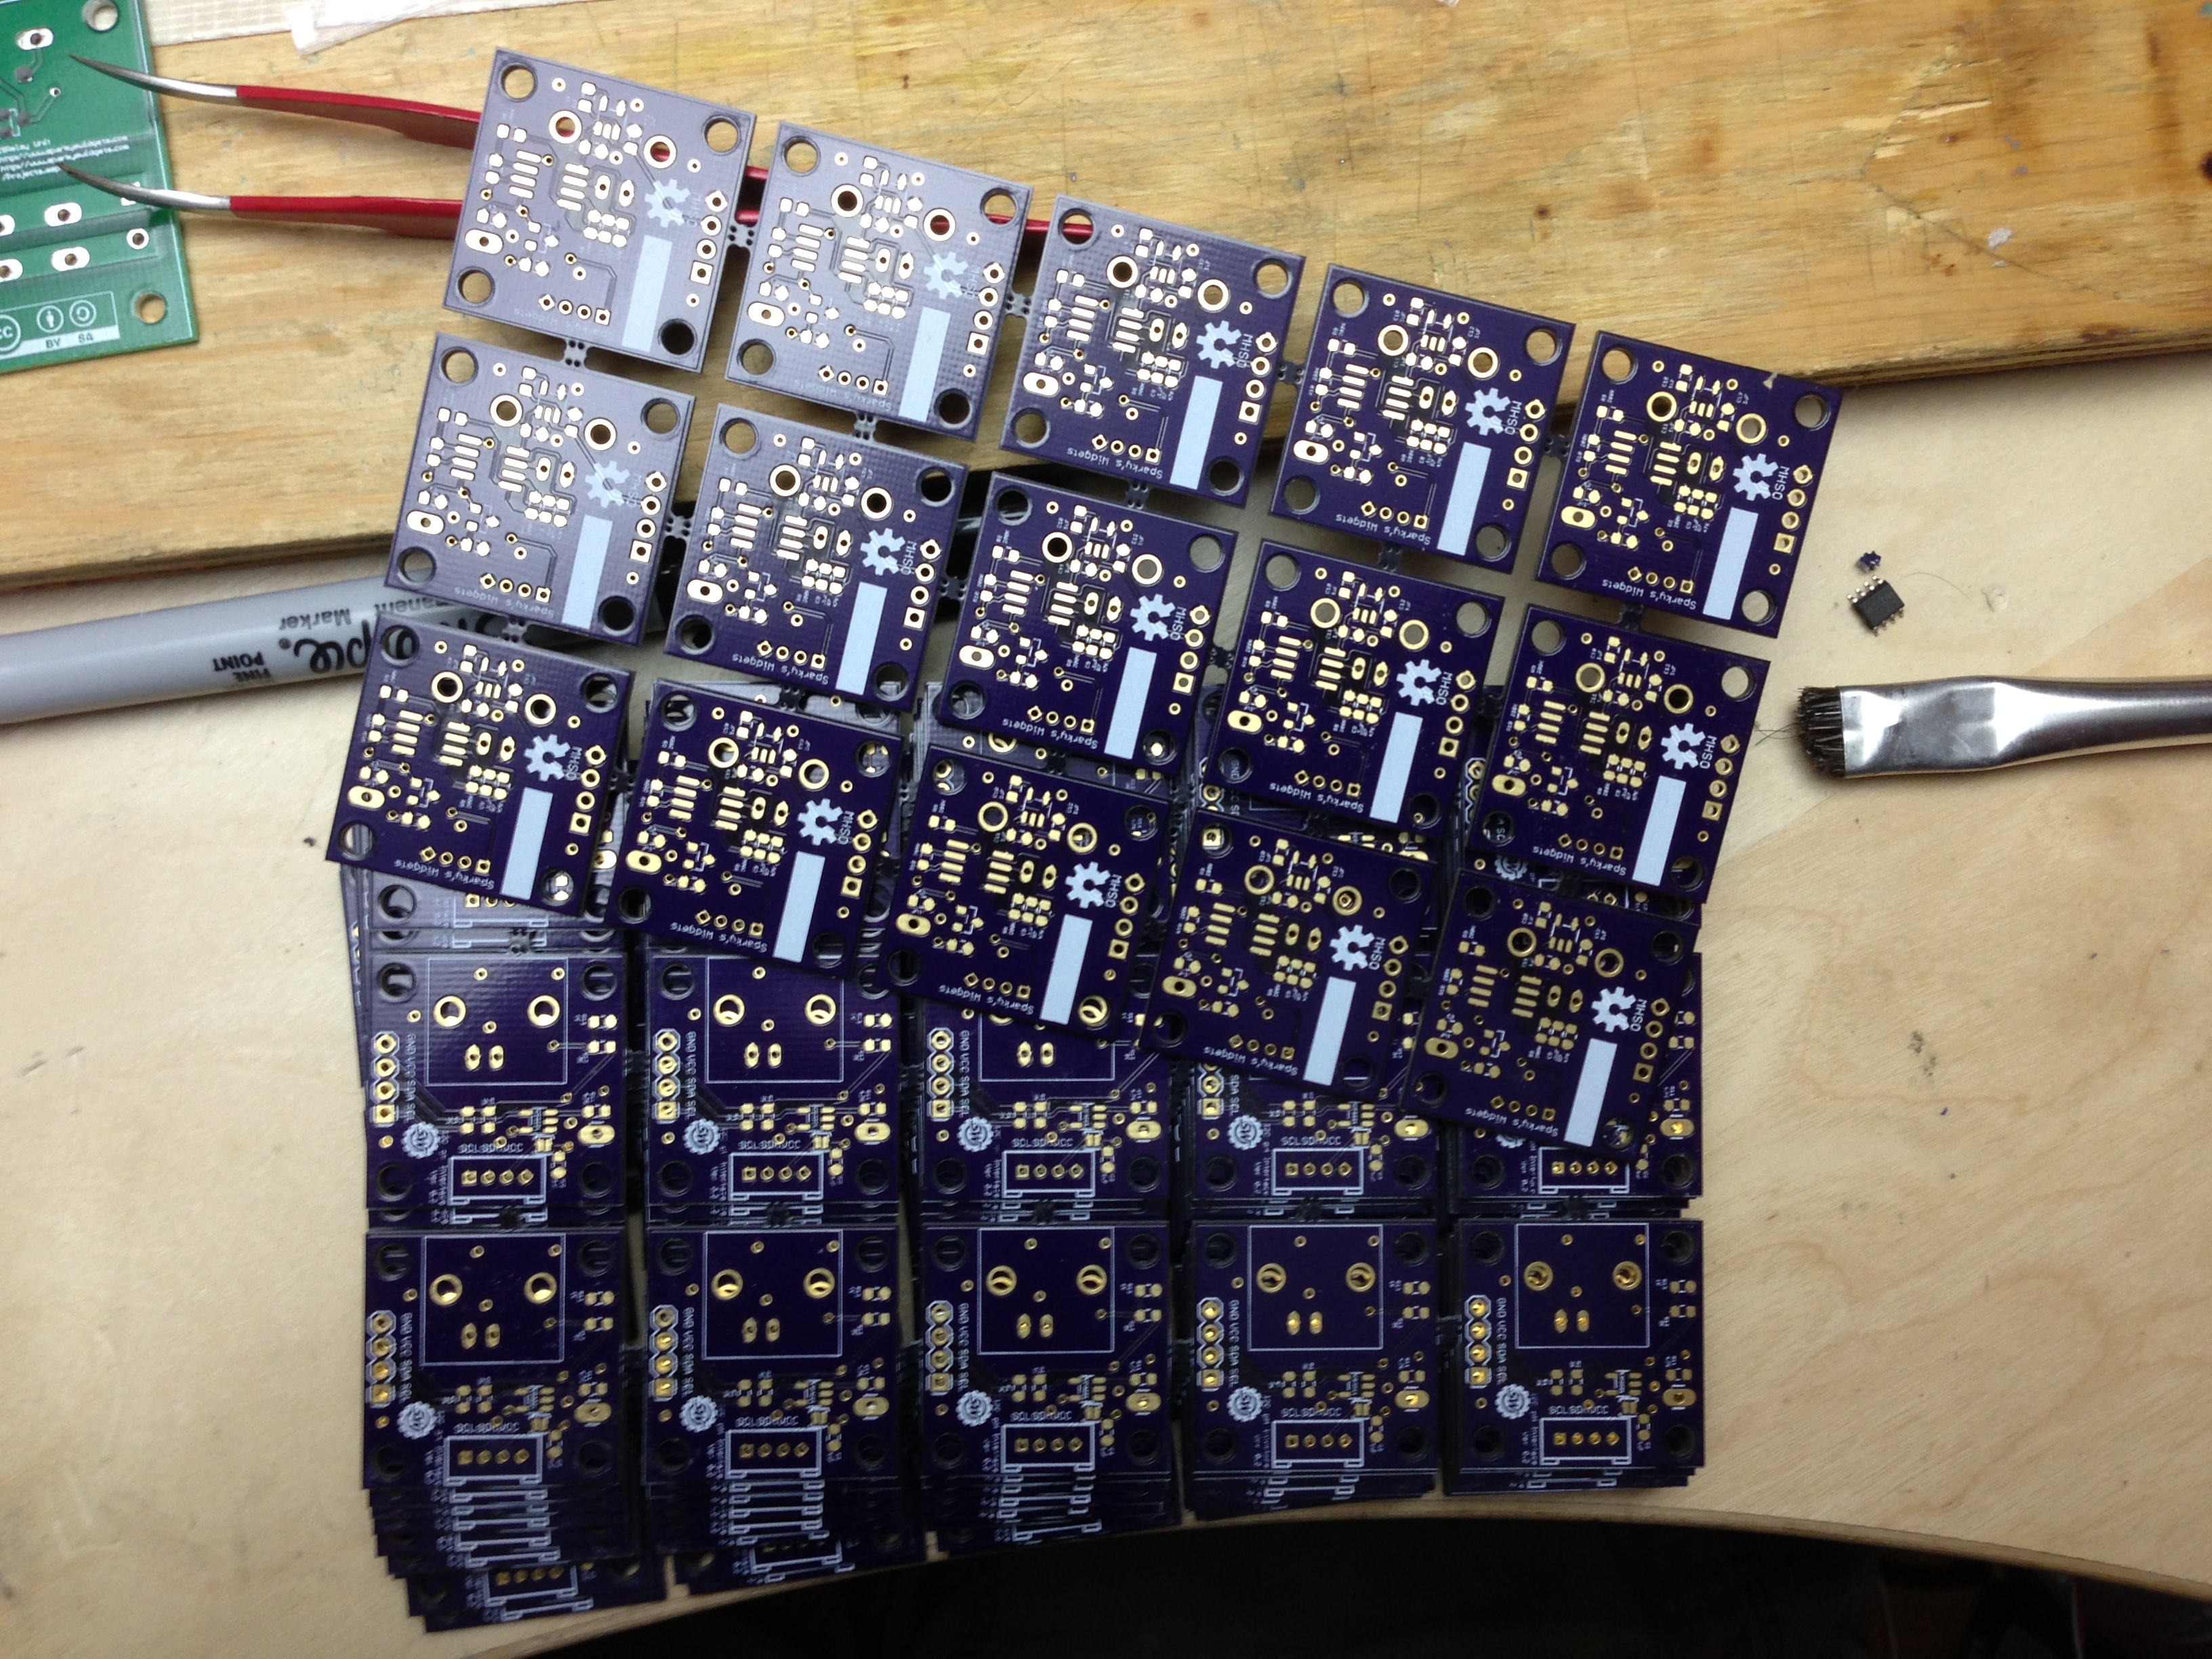 Nice batch of OSHPark boards ready for assembly!